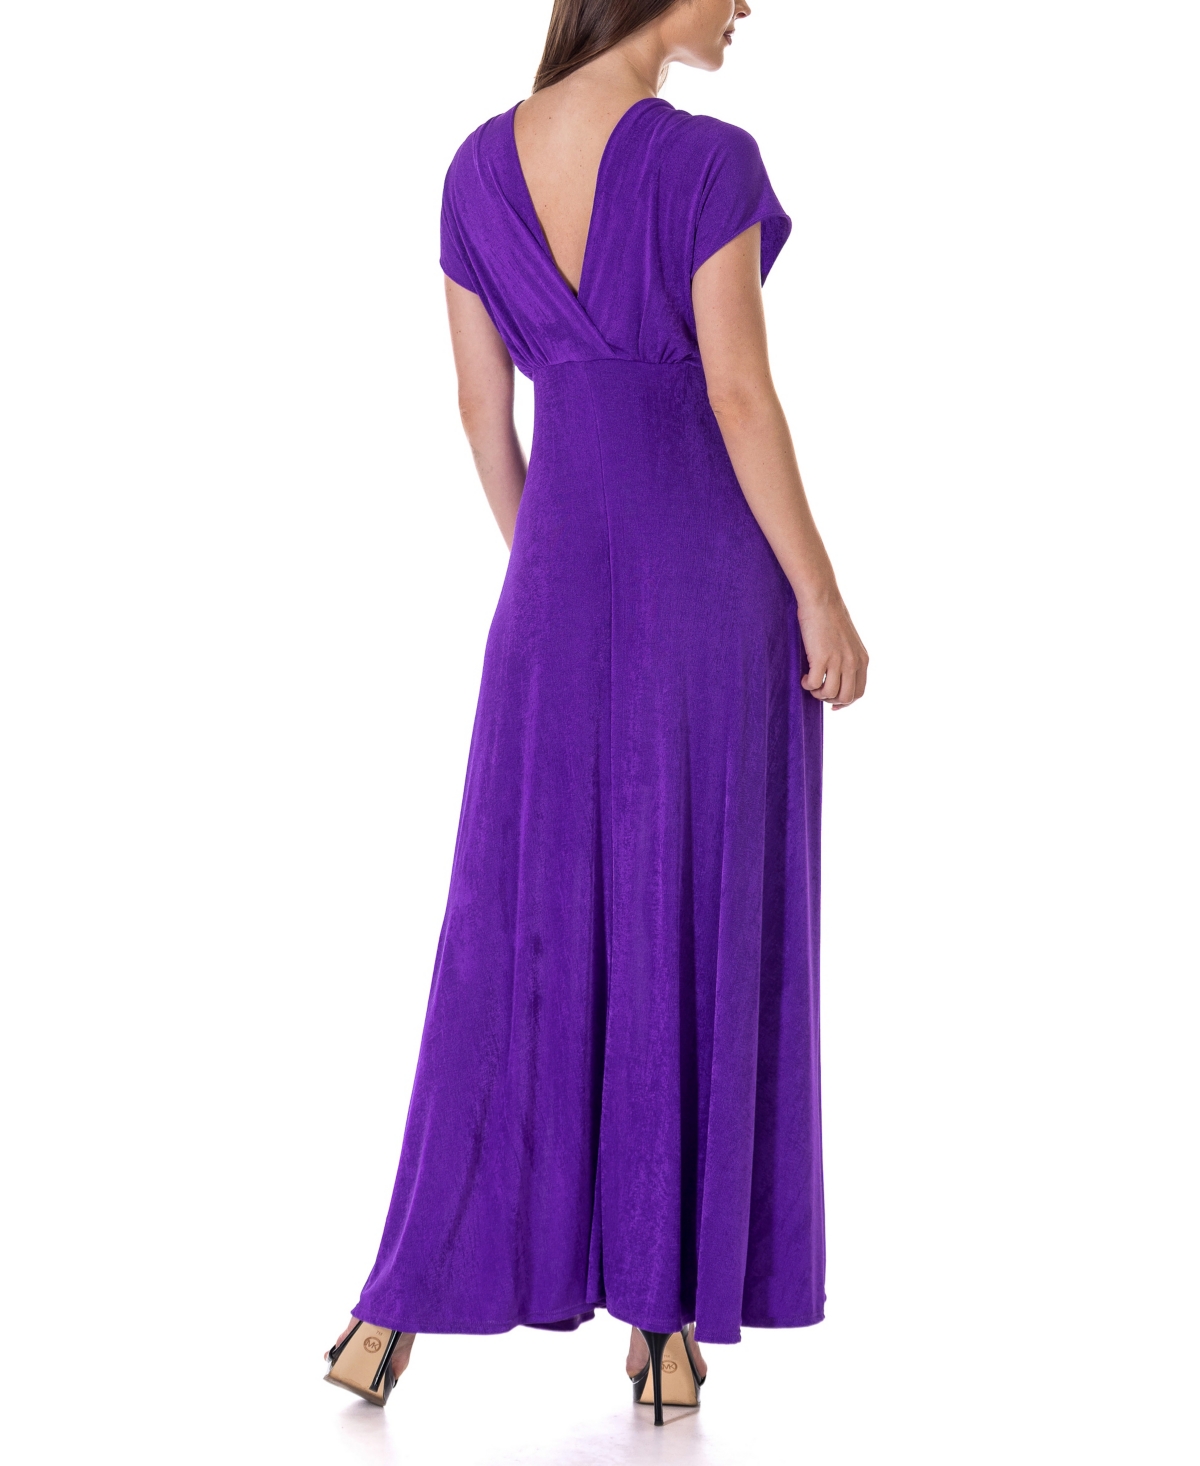 Shop 24seven Comfort Apparel Flutter Sleeve Metallic Knit Maxi Dress In Light Beig